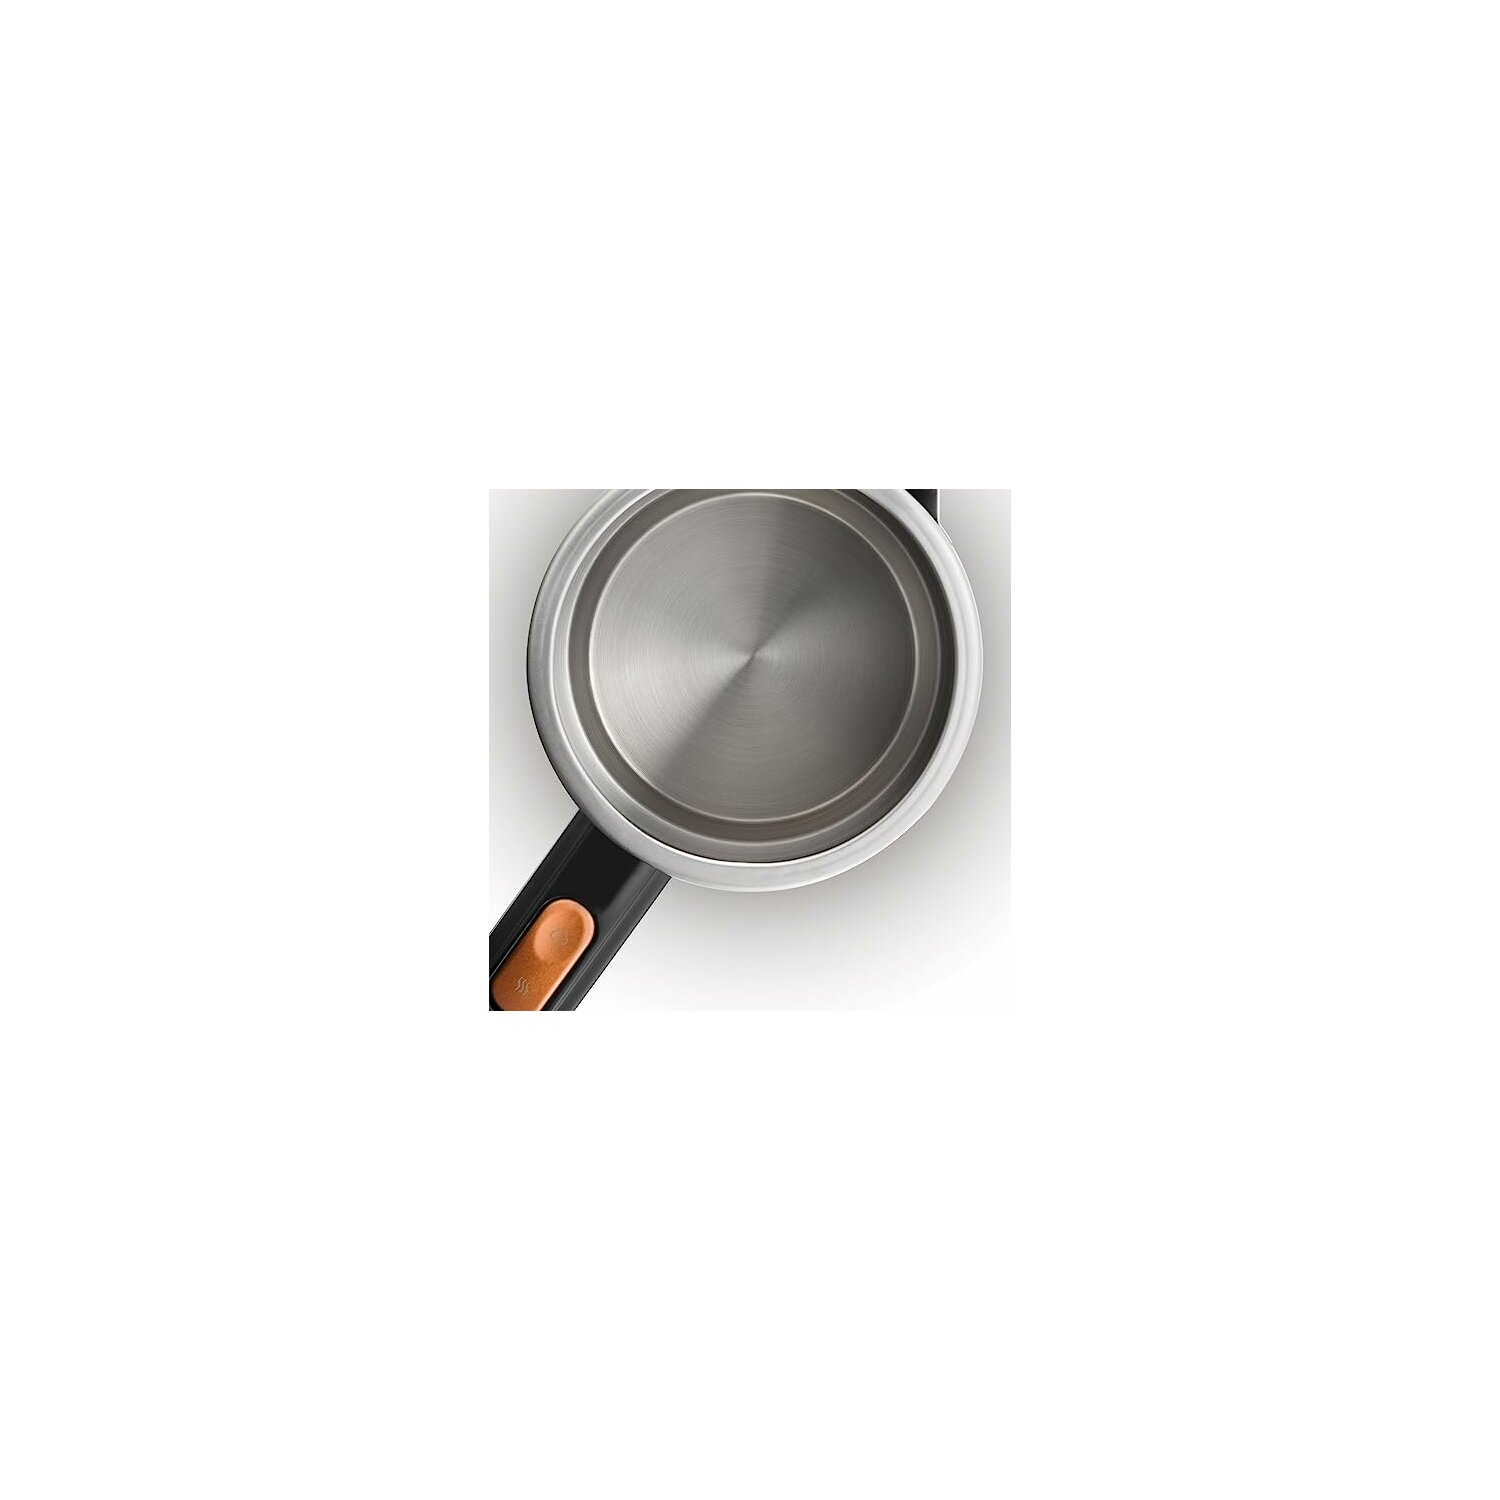 ARZUM Lux Teemaschine Kaffeemaschine Silber-Schwarz Inox